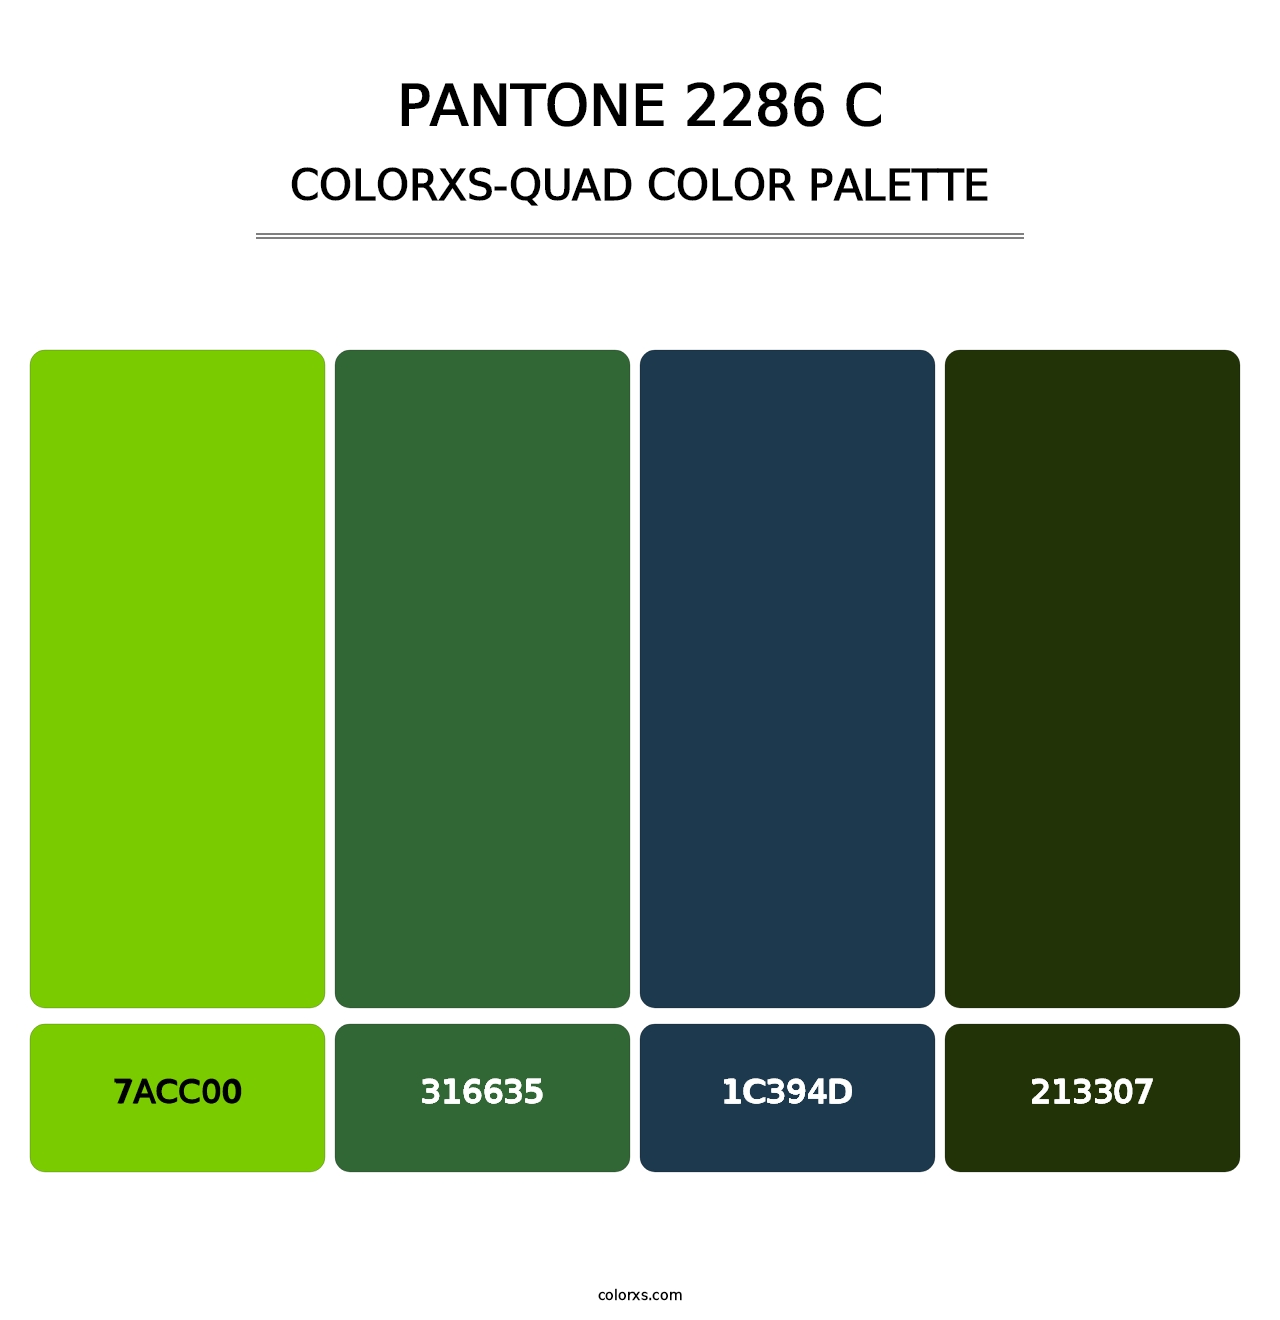 PANTONE 2286 C - Colorxs Quad Palette